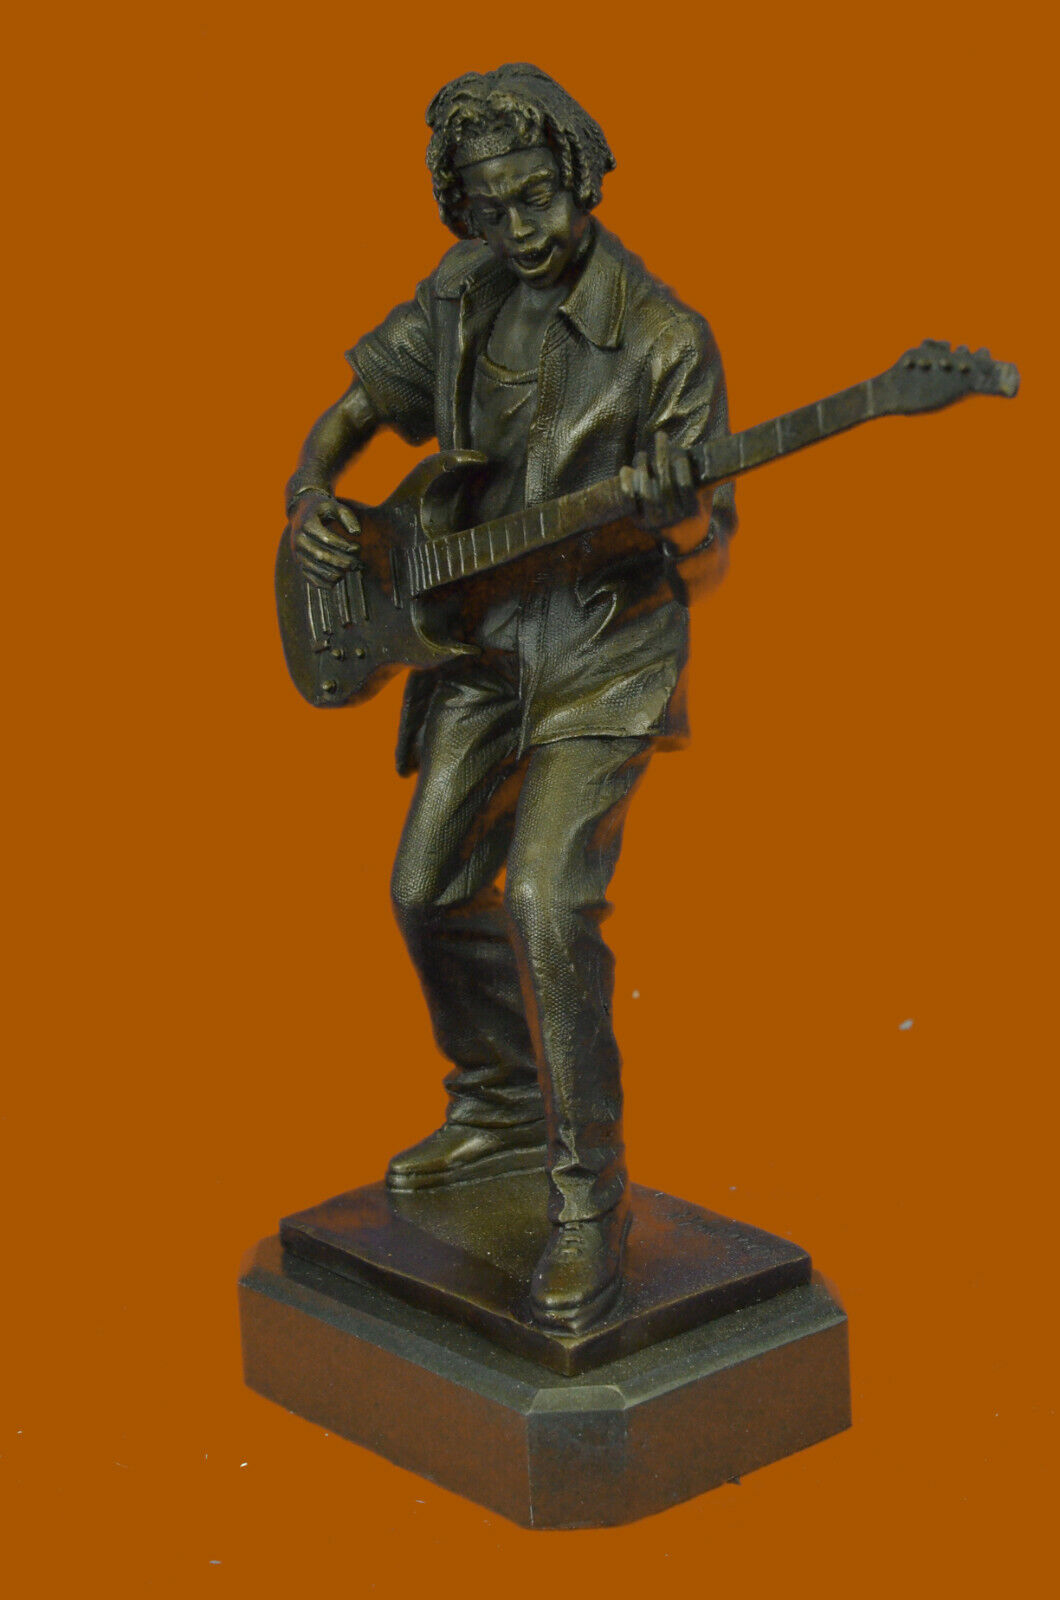 Musician Rock Guitar Player Funk Musical Abstract Bronze Art Sculpture Statue